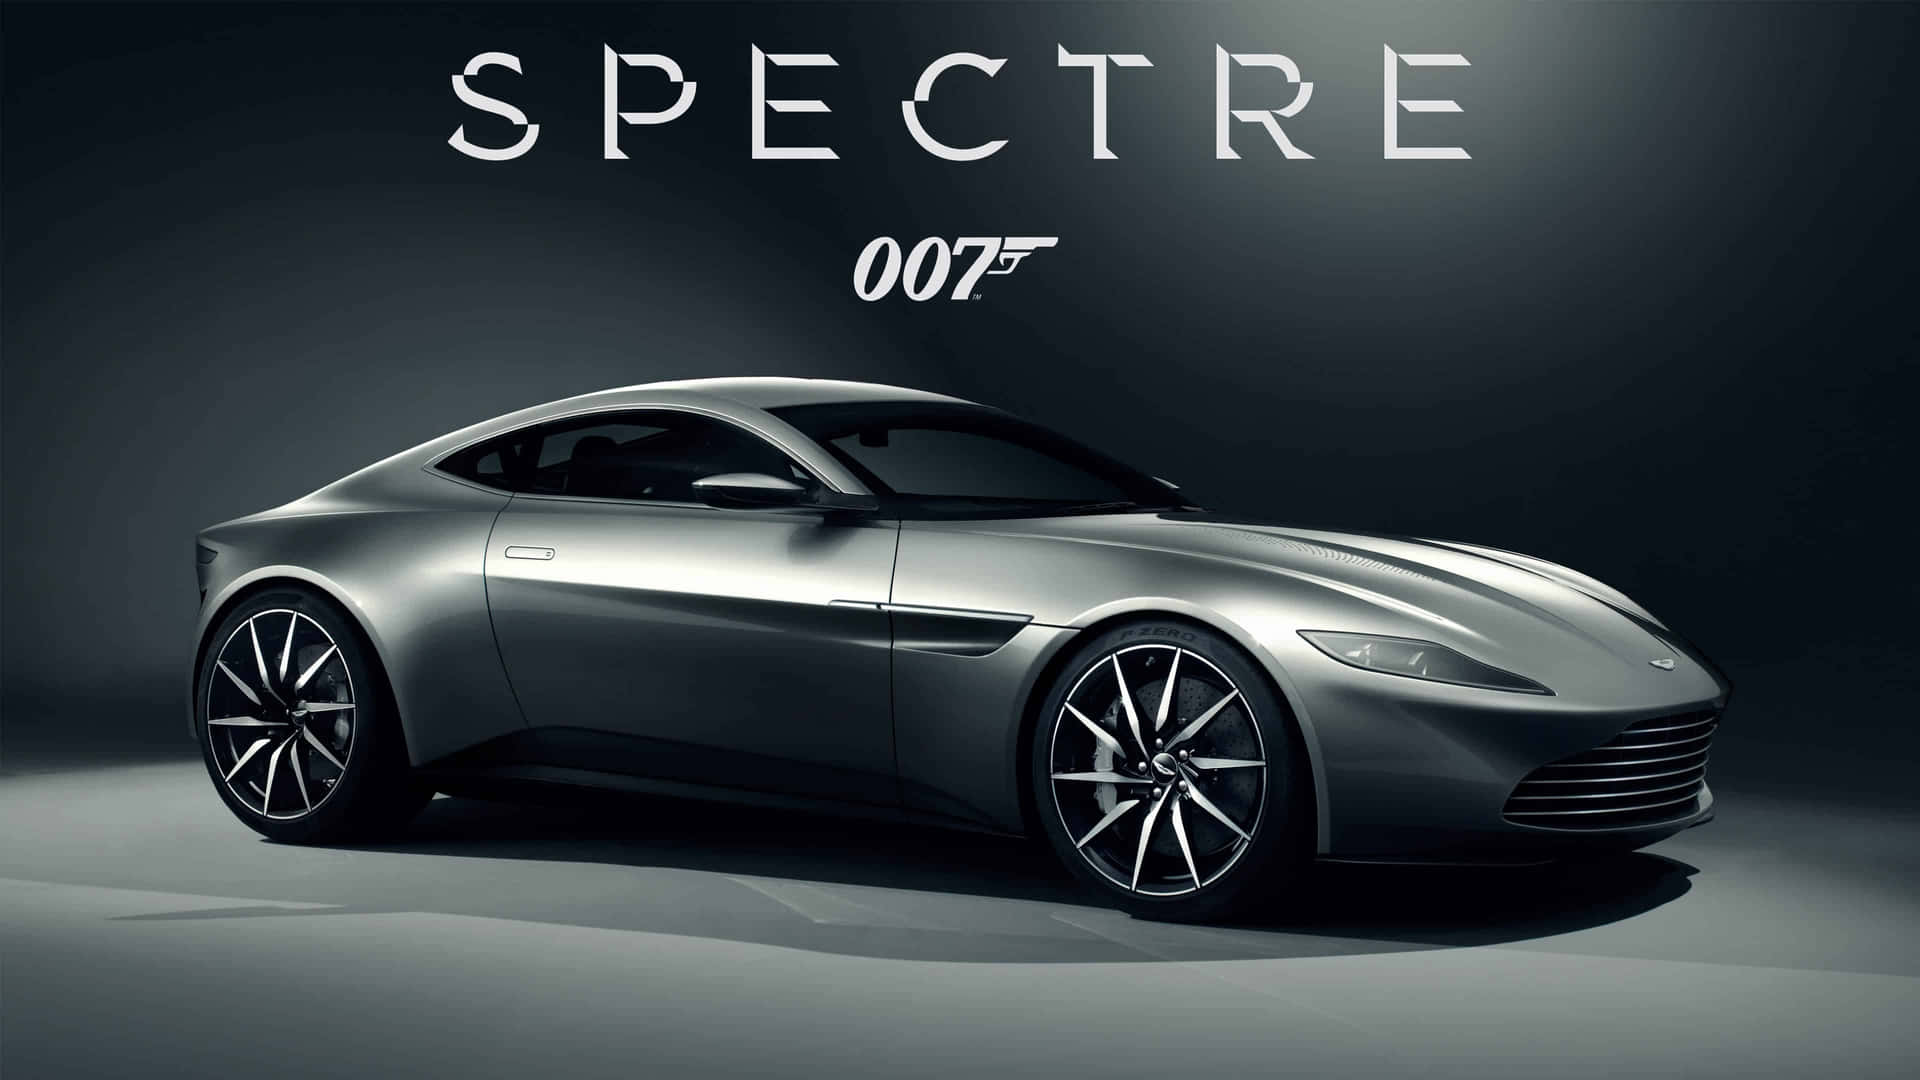 Aston Martin D B10 Spectre007 Promotional Wallpaper